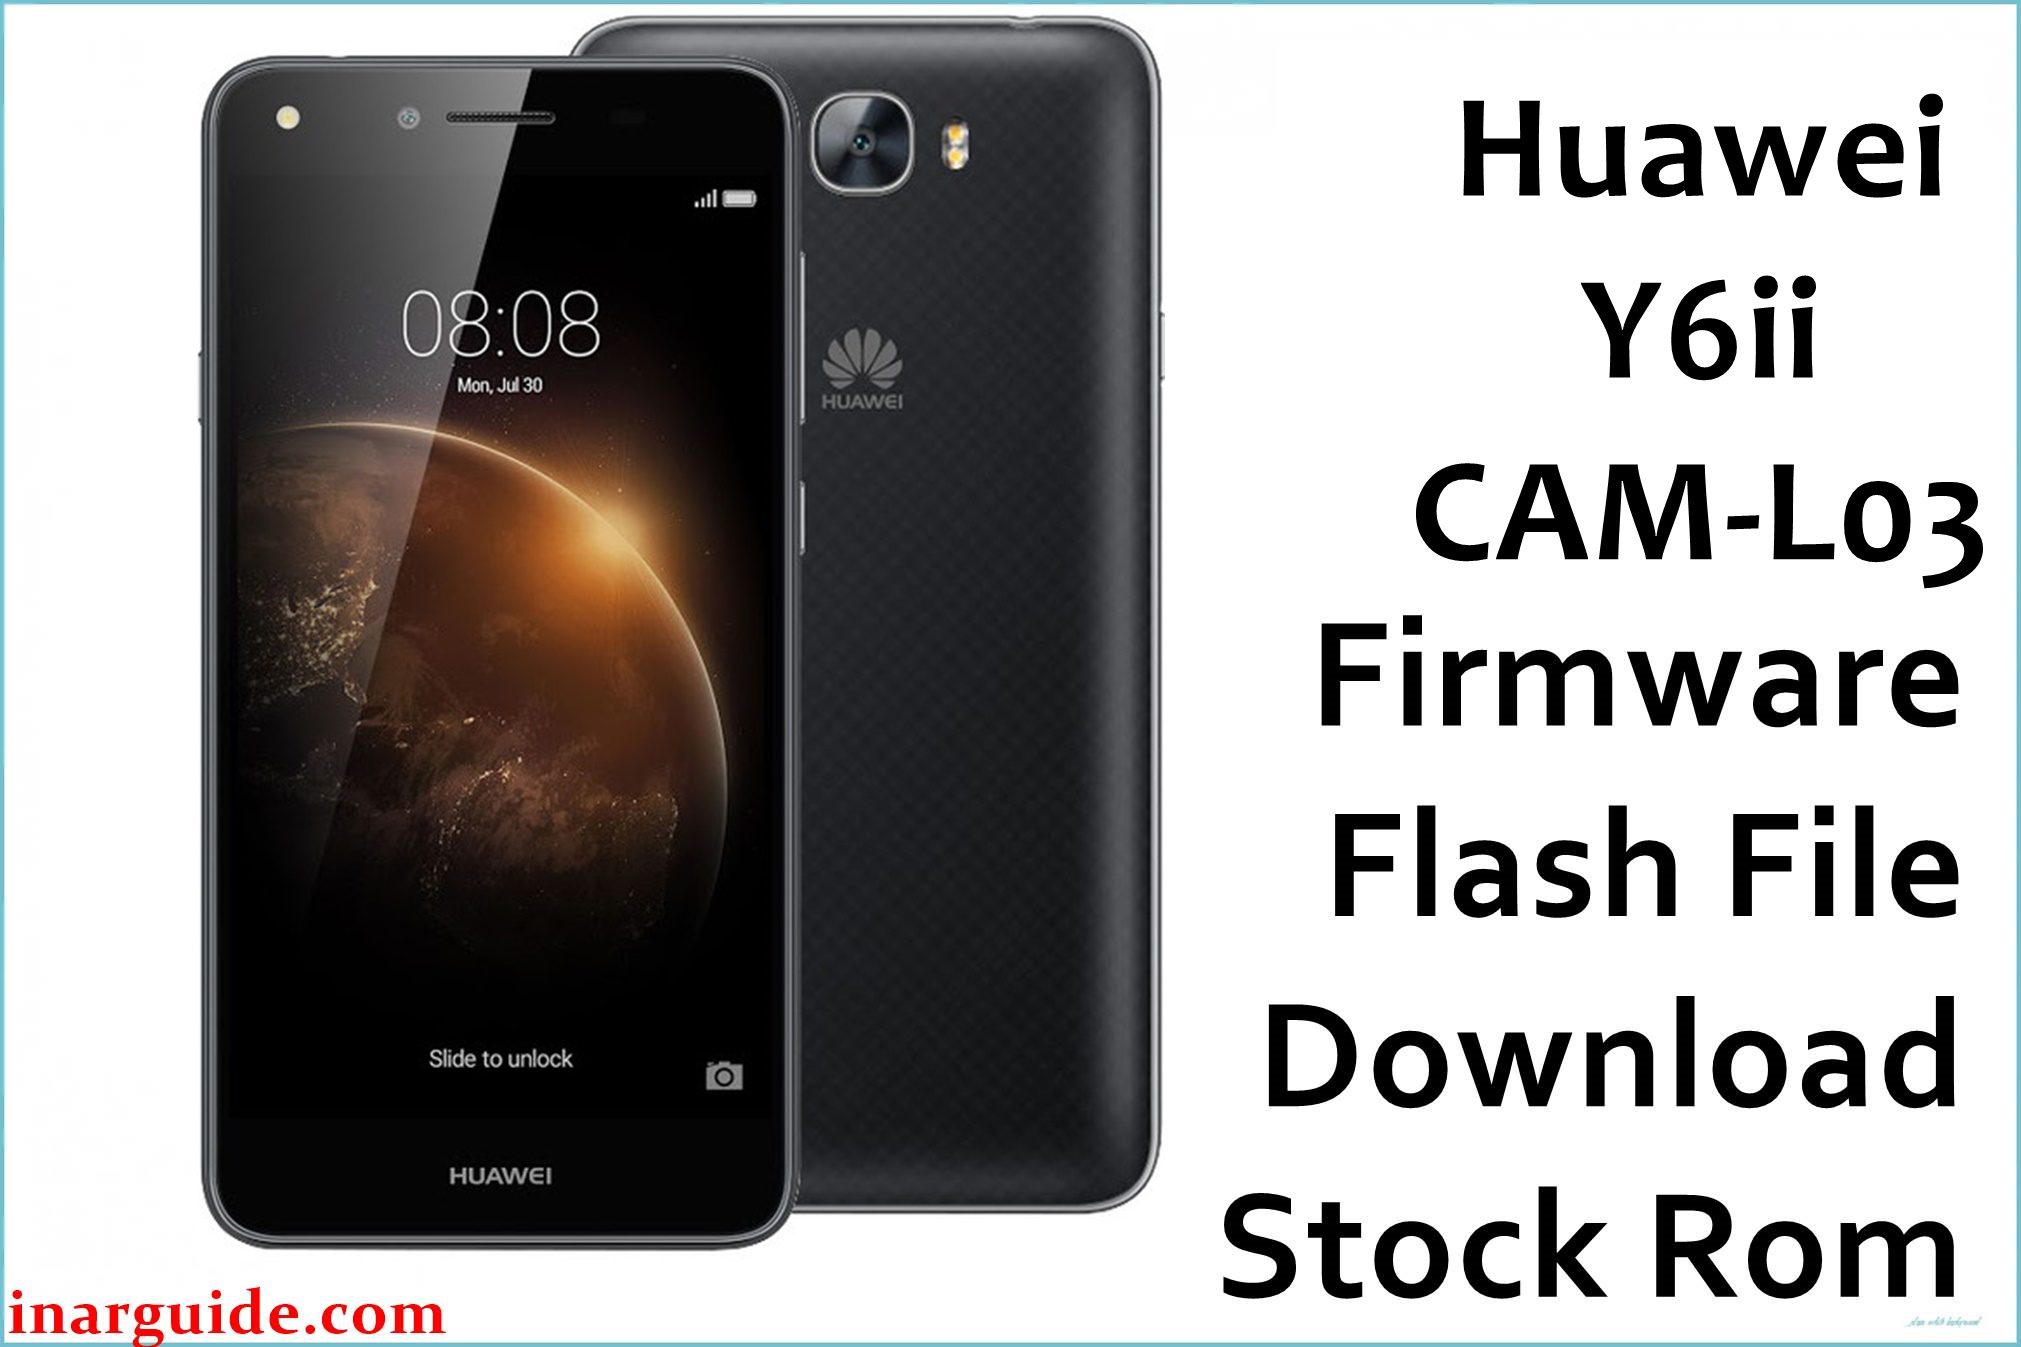 Huawei Y6ii CAM L03